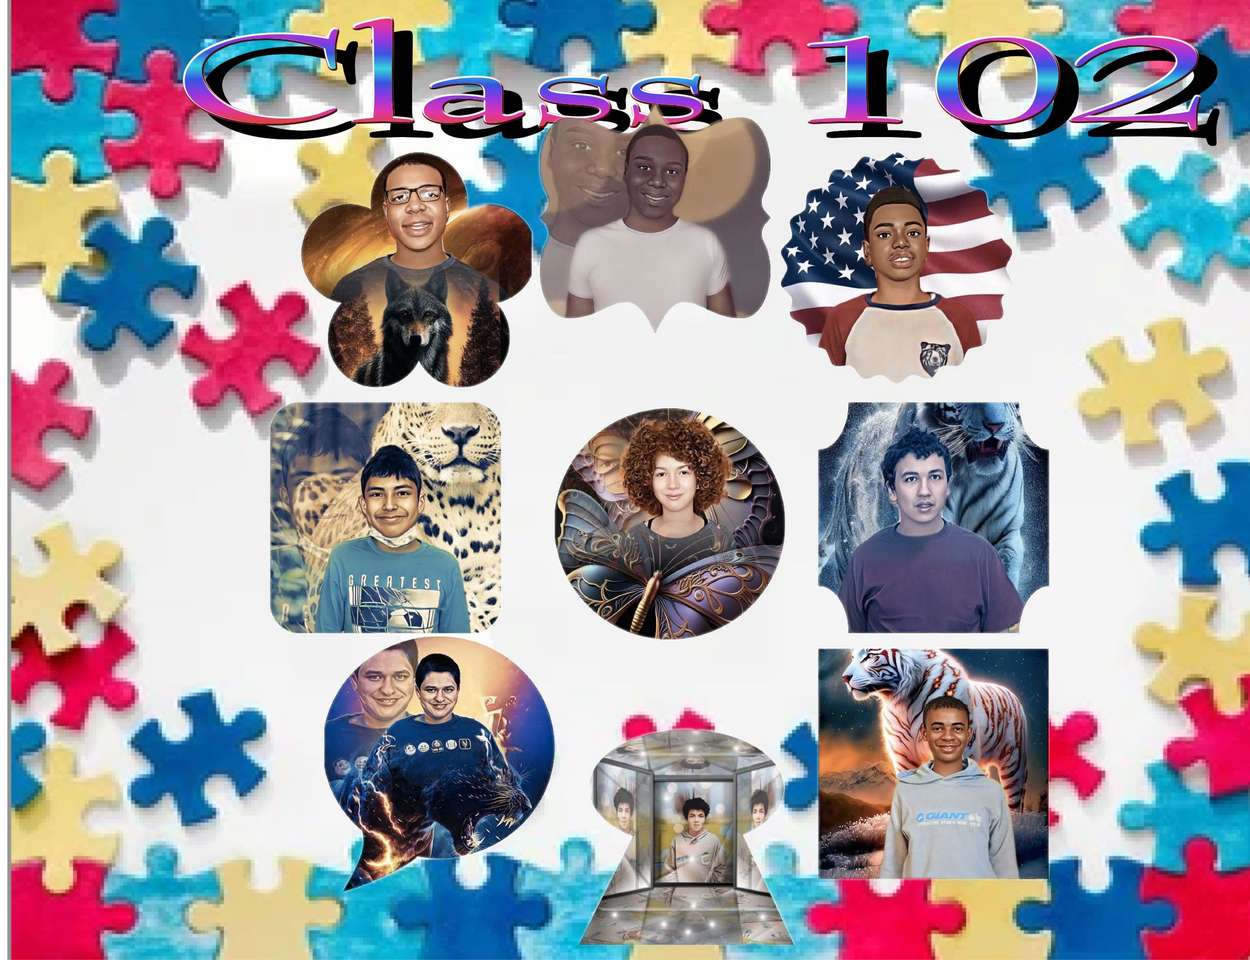 Classe102 puzzle online a partir de fotografia